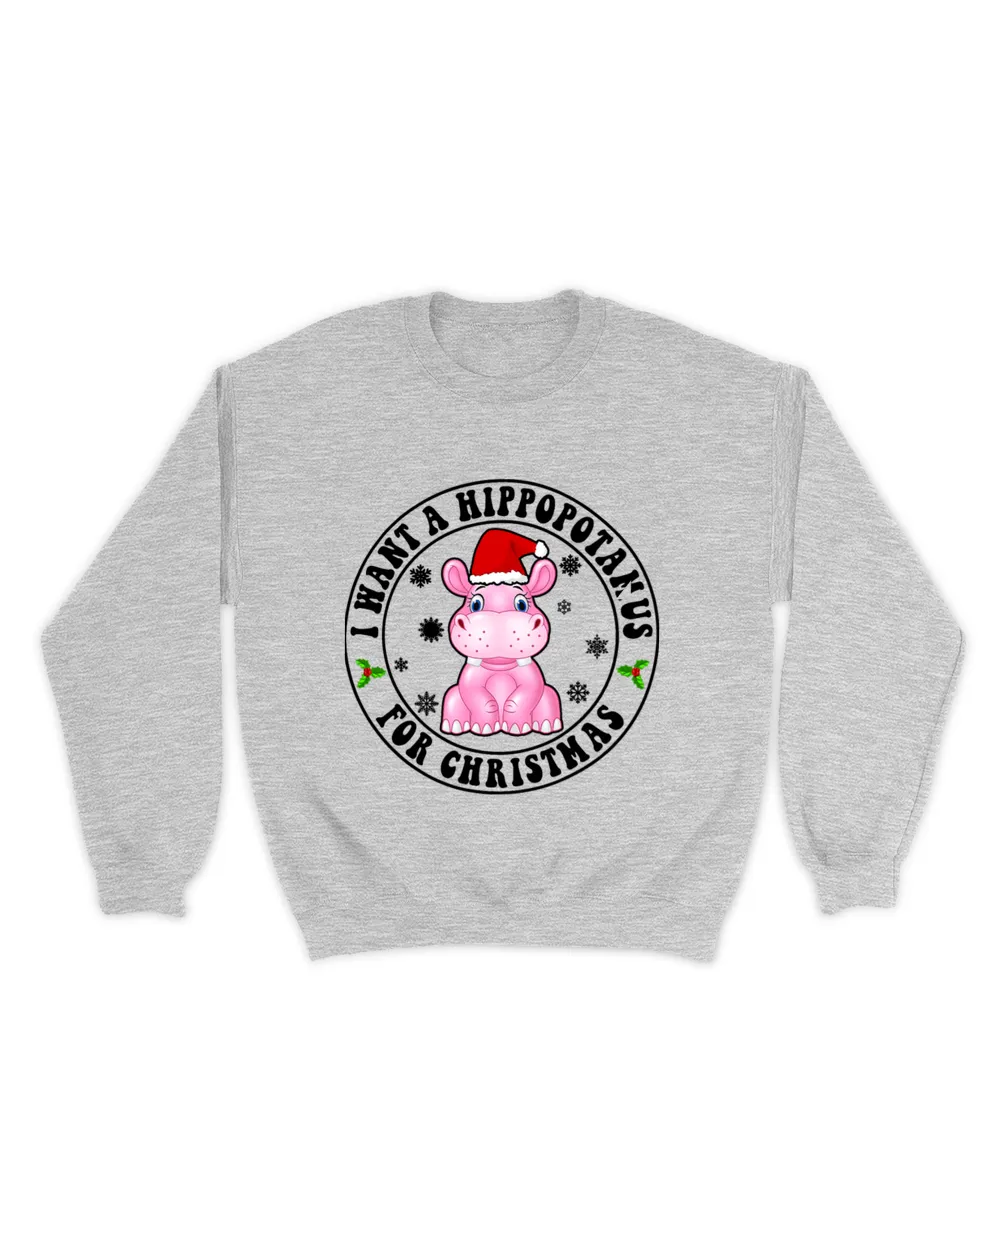 I Want A Hippopotamus For Christmas 88